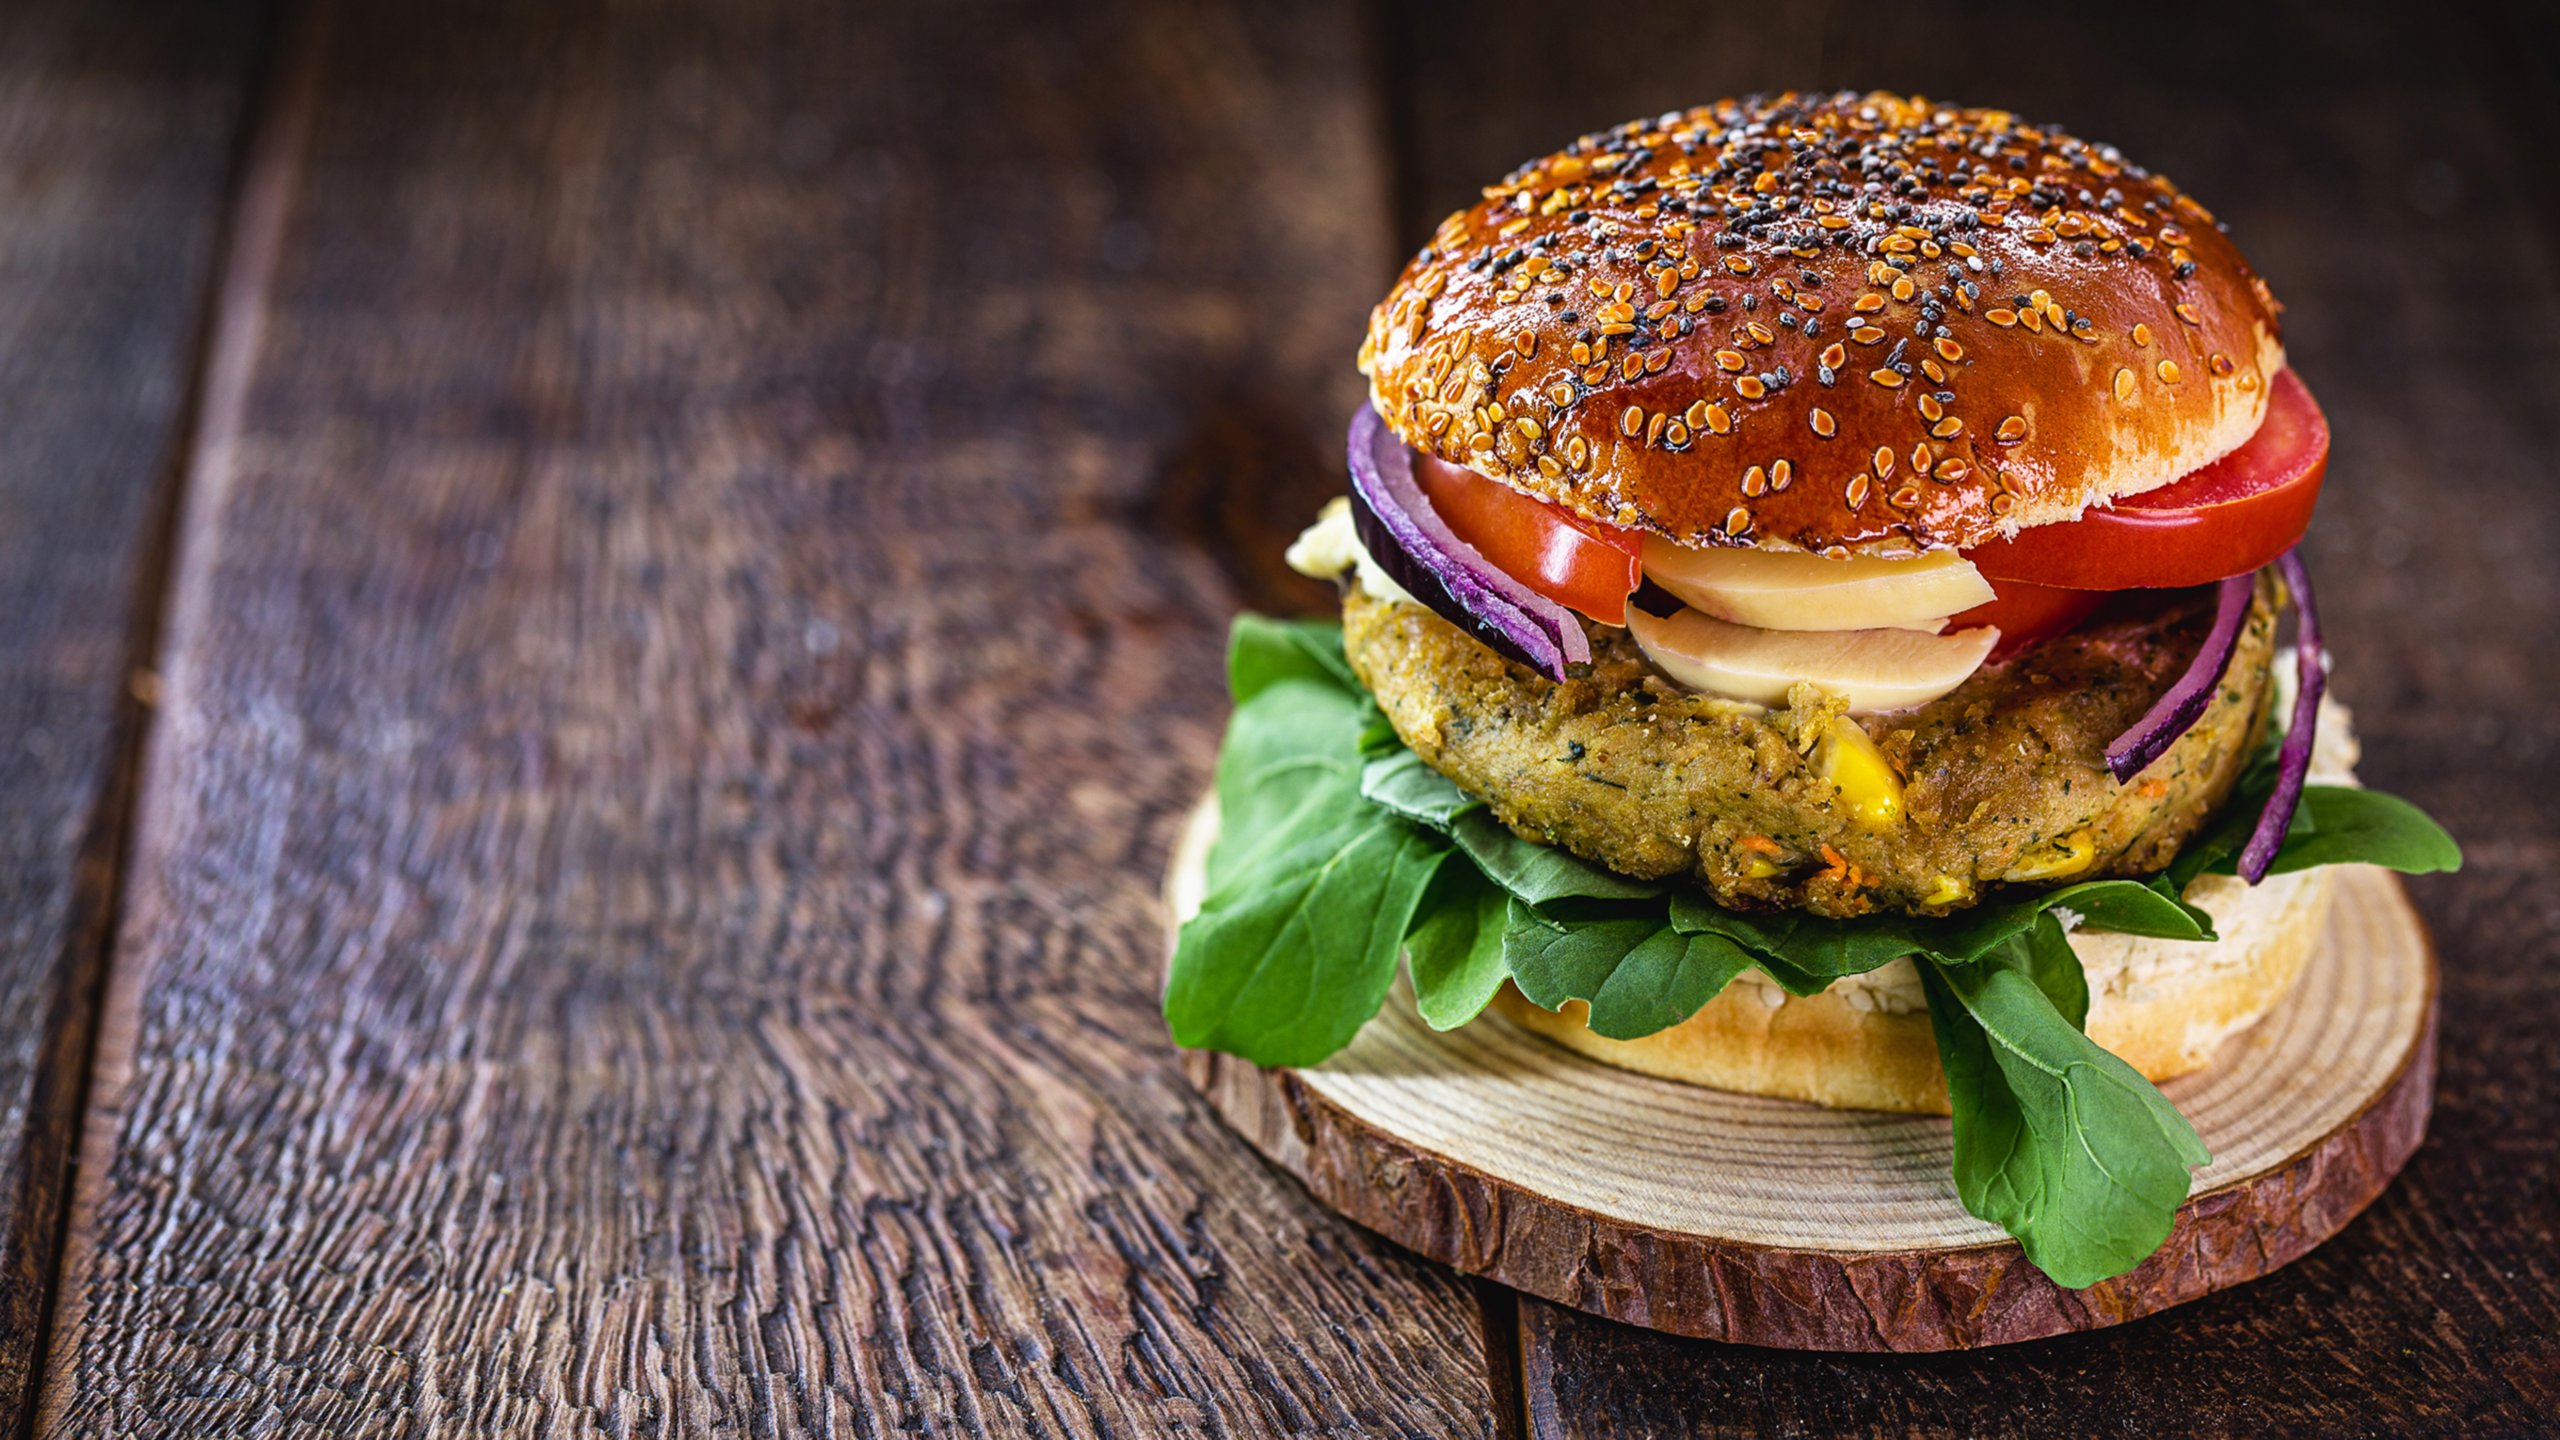 Hamburger végétarien sur un petit pain aux graines de sésame avec tomates, champignons, oignon et laitue. Le hamburger est posé sur une assiette en bois, elle-même placée sur une table en bois. Le hamburger est situé sur la droite de l’image.